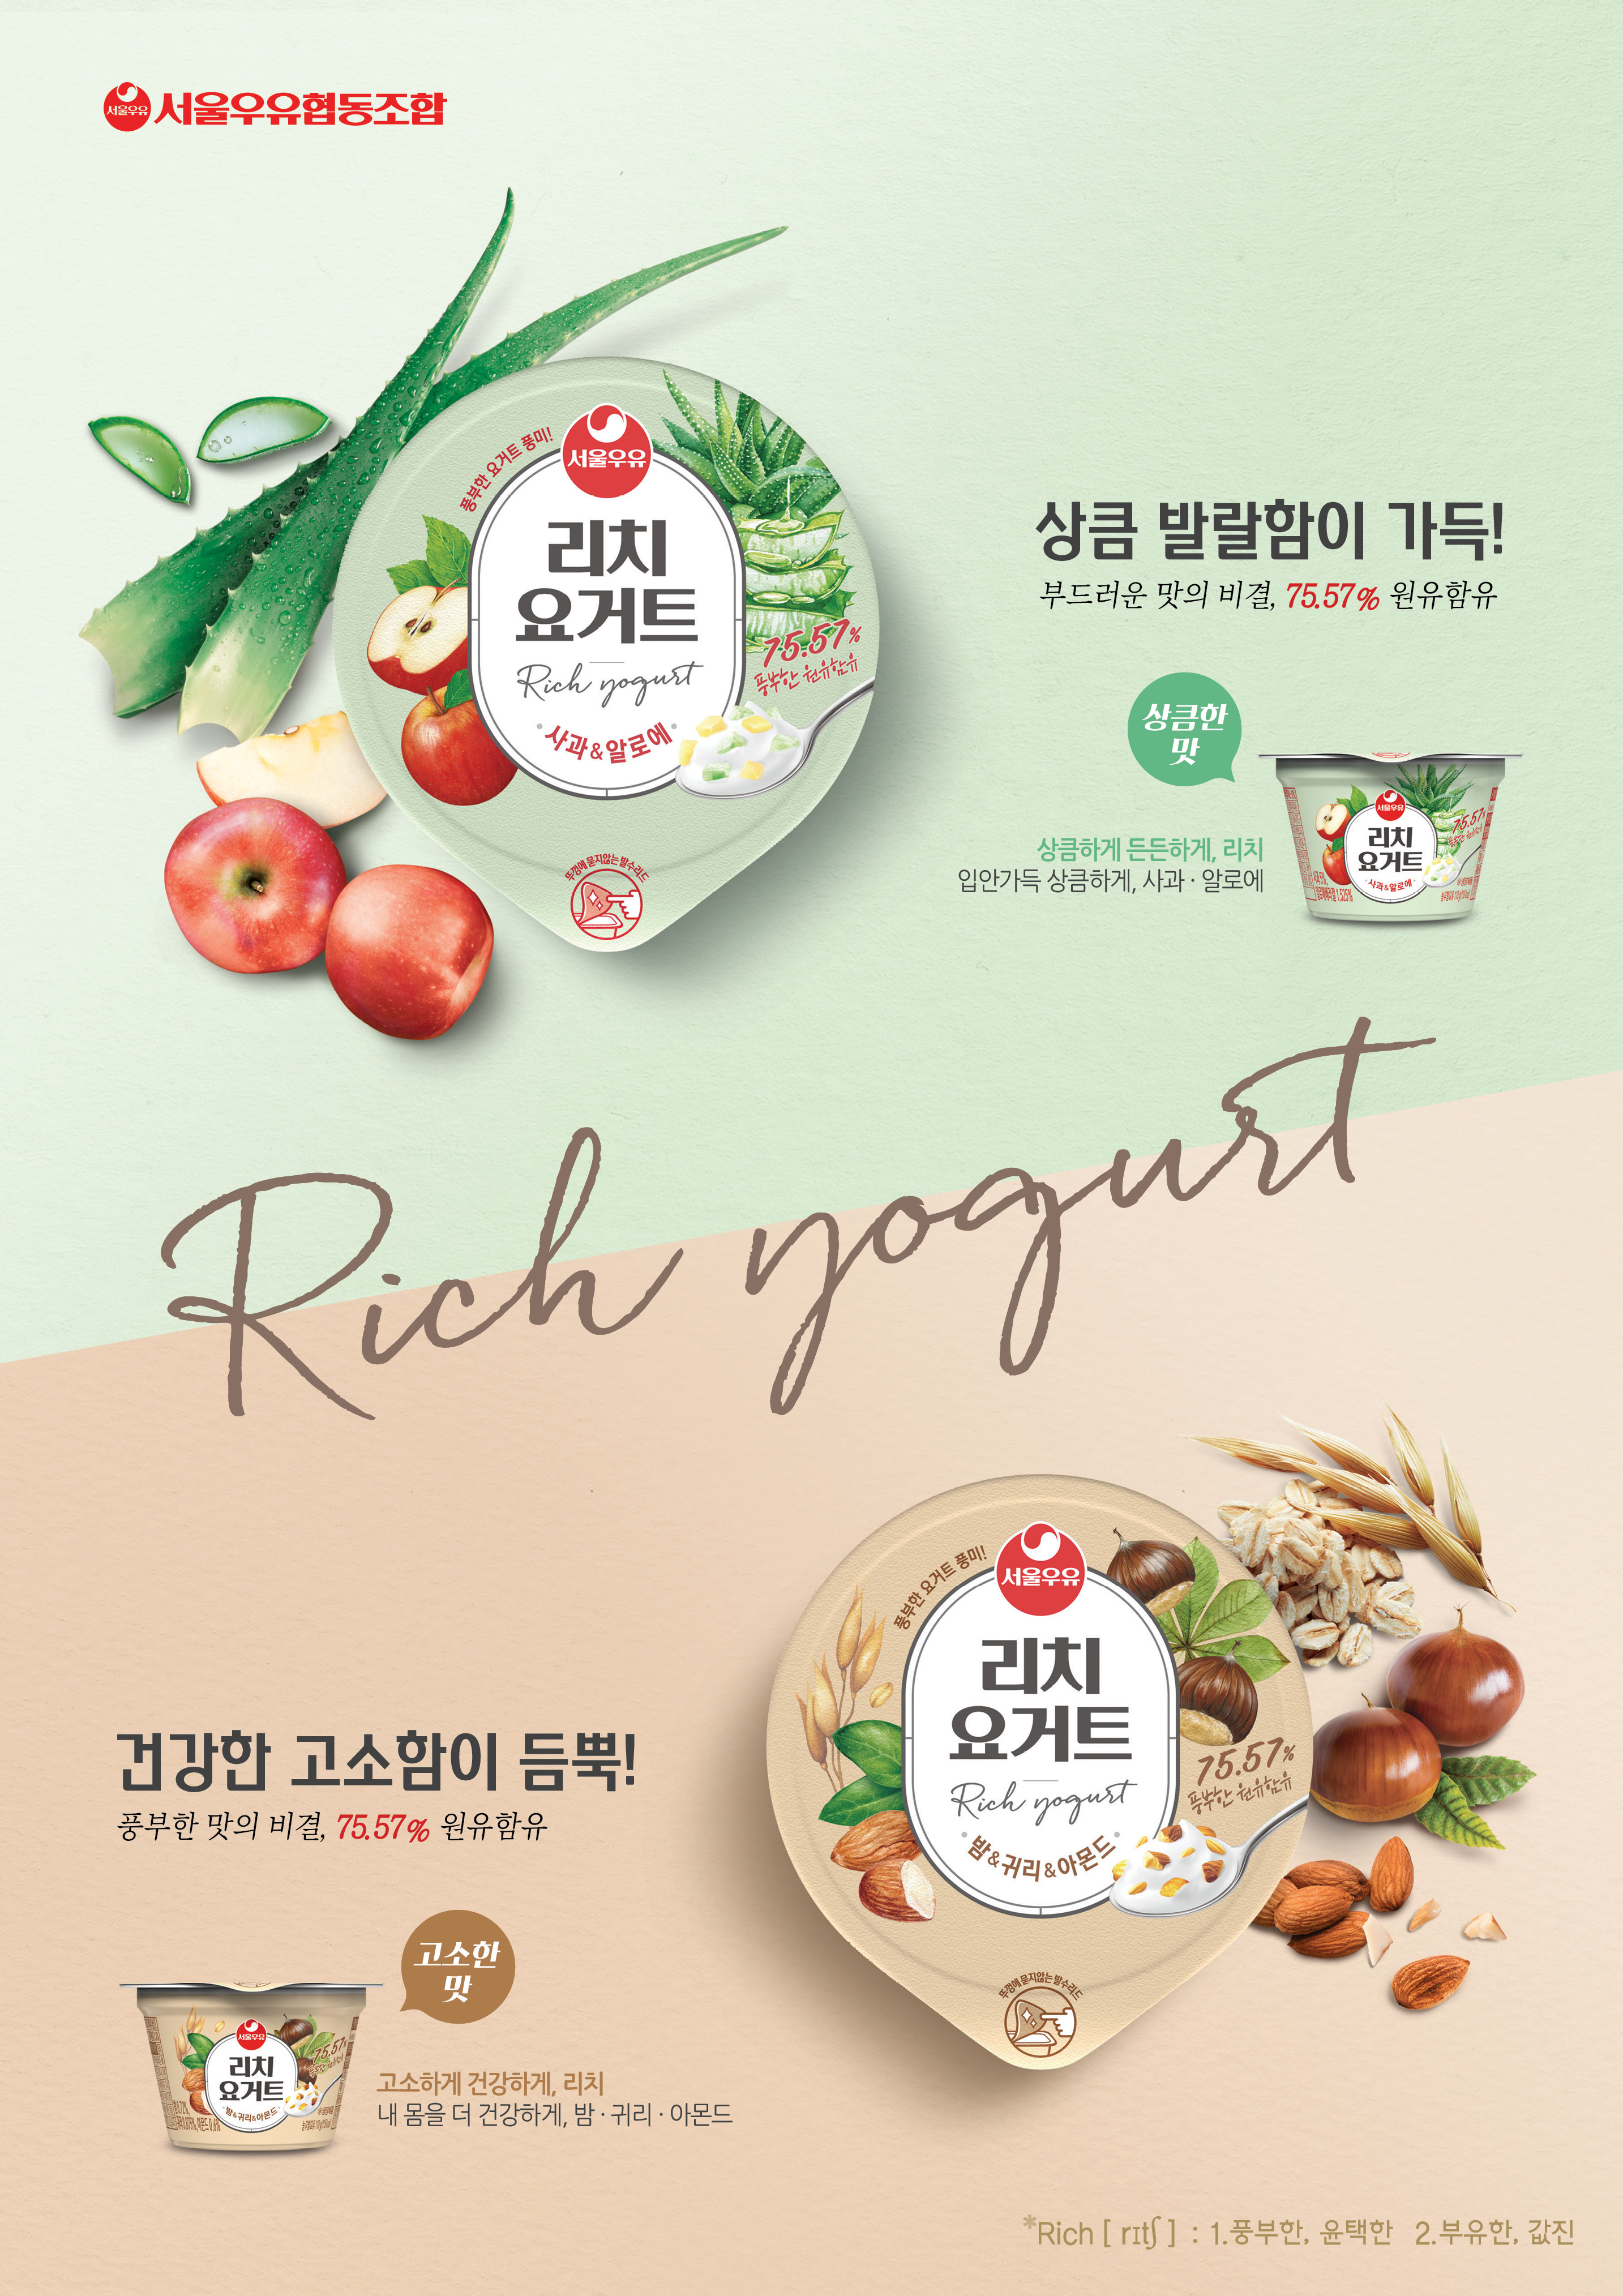 서울우유 리치요거트 인쇄광고